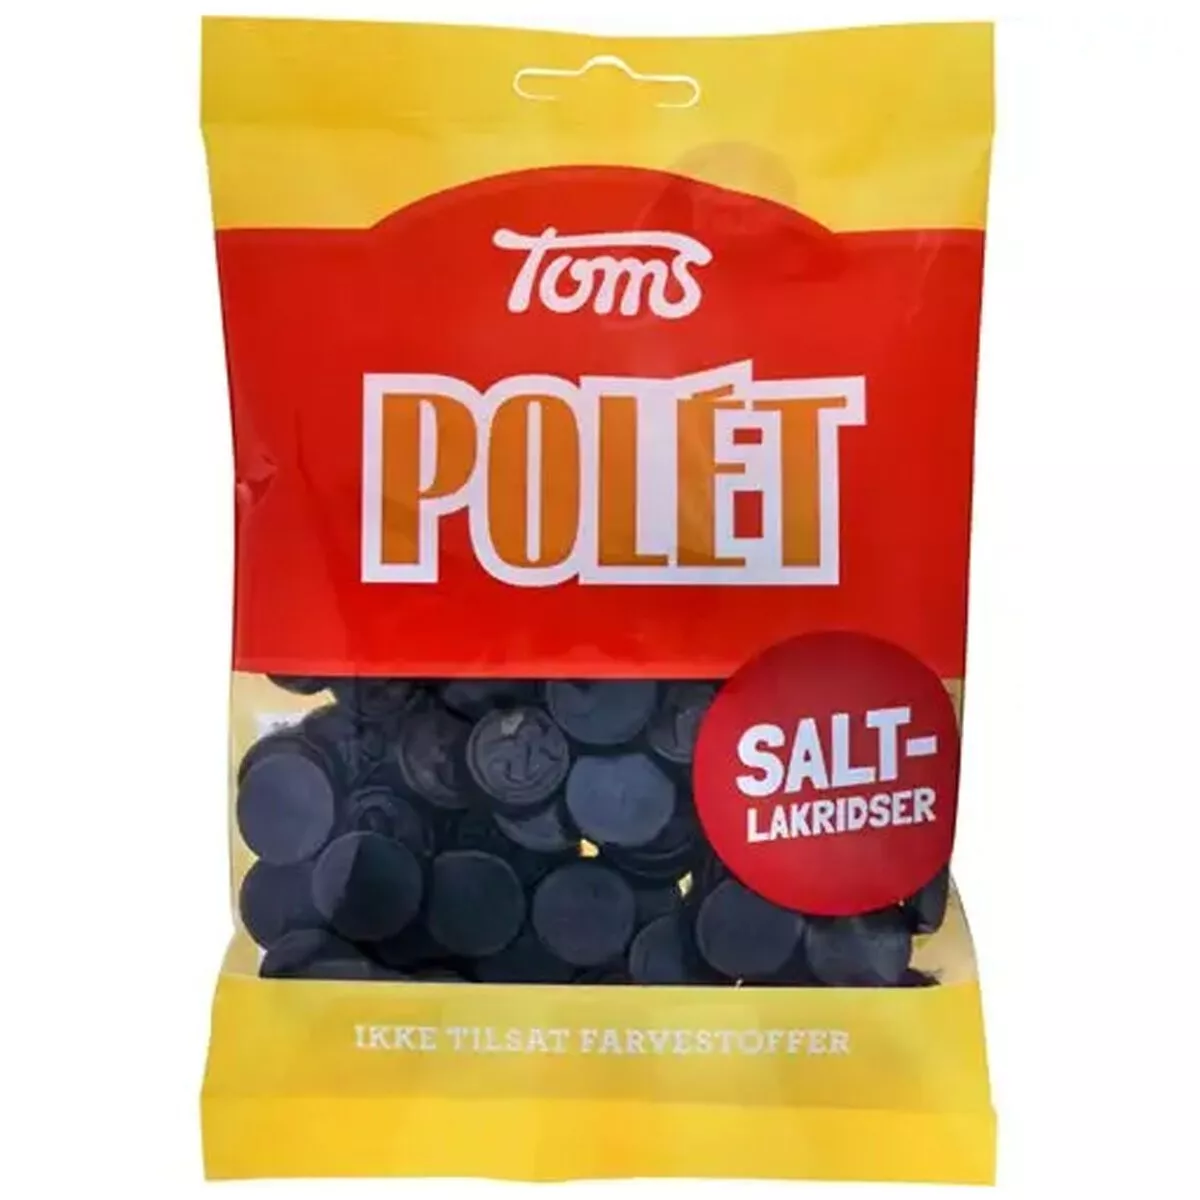 Toms Polet Salt-Lakridser (110g) 1